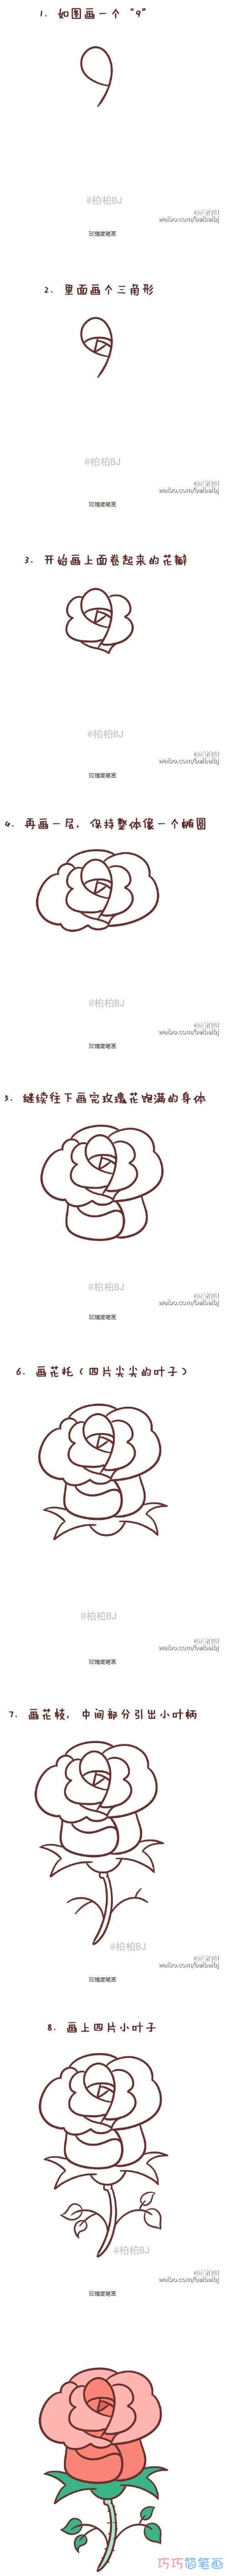 七夕情人节玫瑰花的画法详细步骤教程漂亮